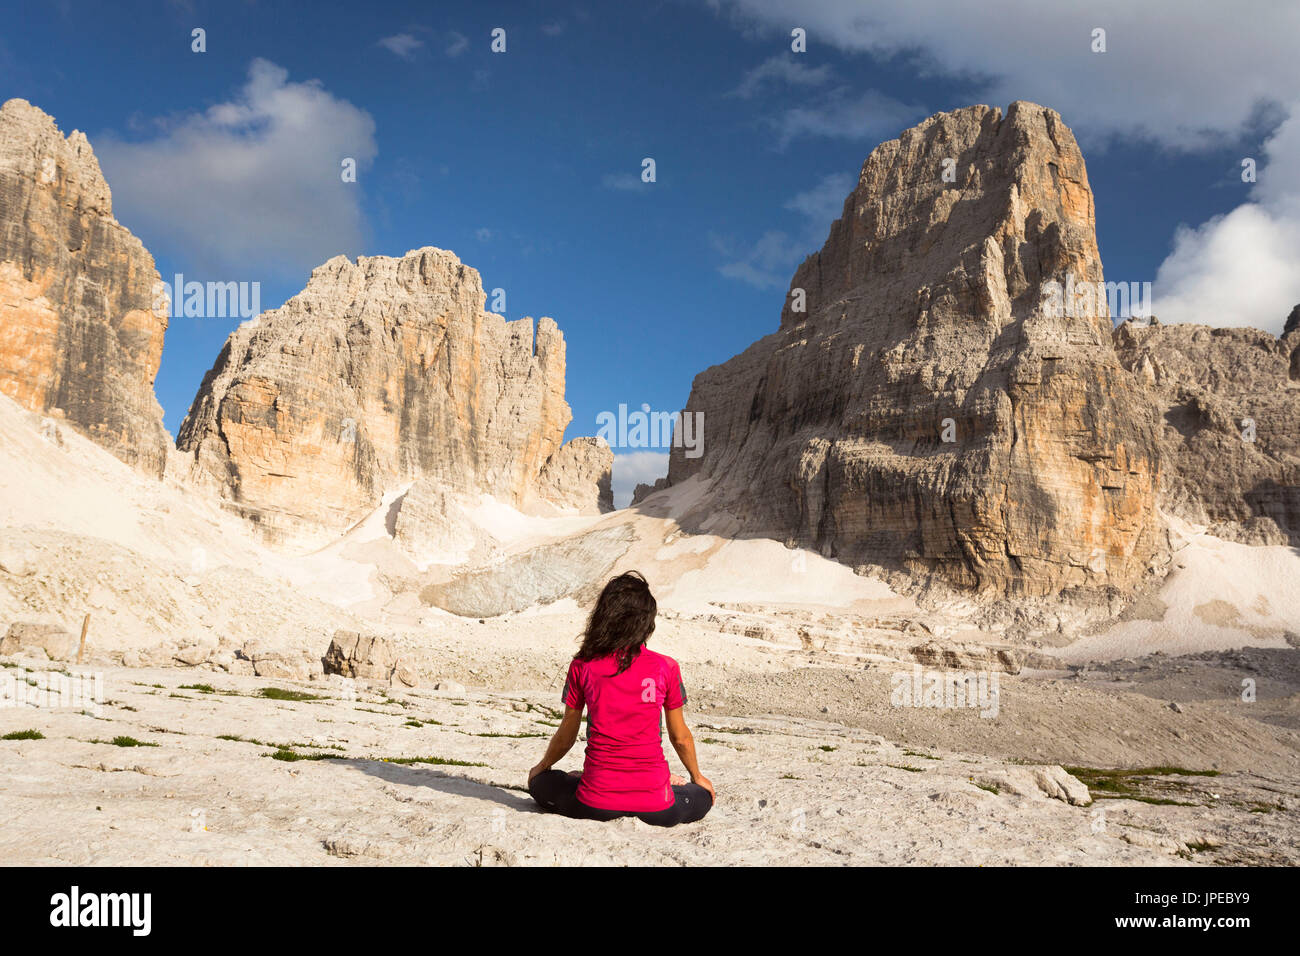 Ein neues Zeitalter Bild einer Frau, die in der Meditation sitzen vor dem Mond mit Brenta Gruppe im Hintergrund, Trient Provinz, Trentino Alto Adige, Italien, Europa Stockfoto